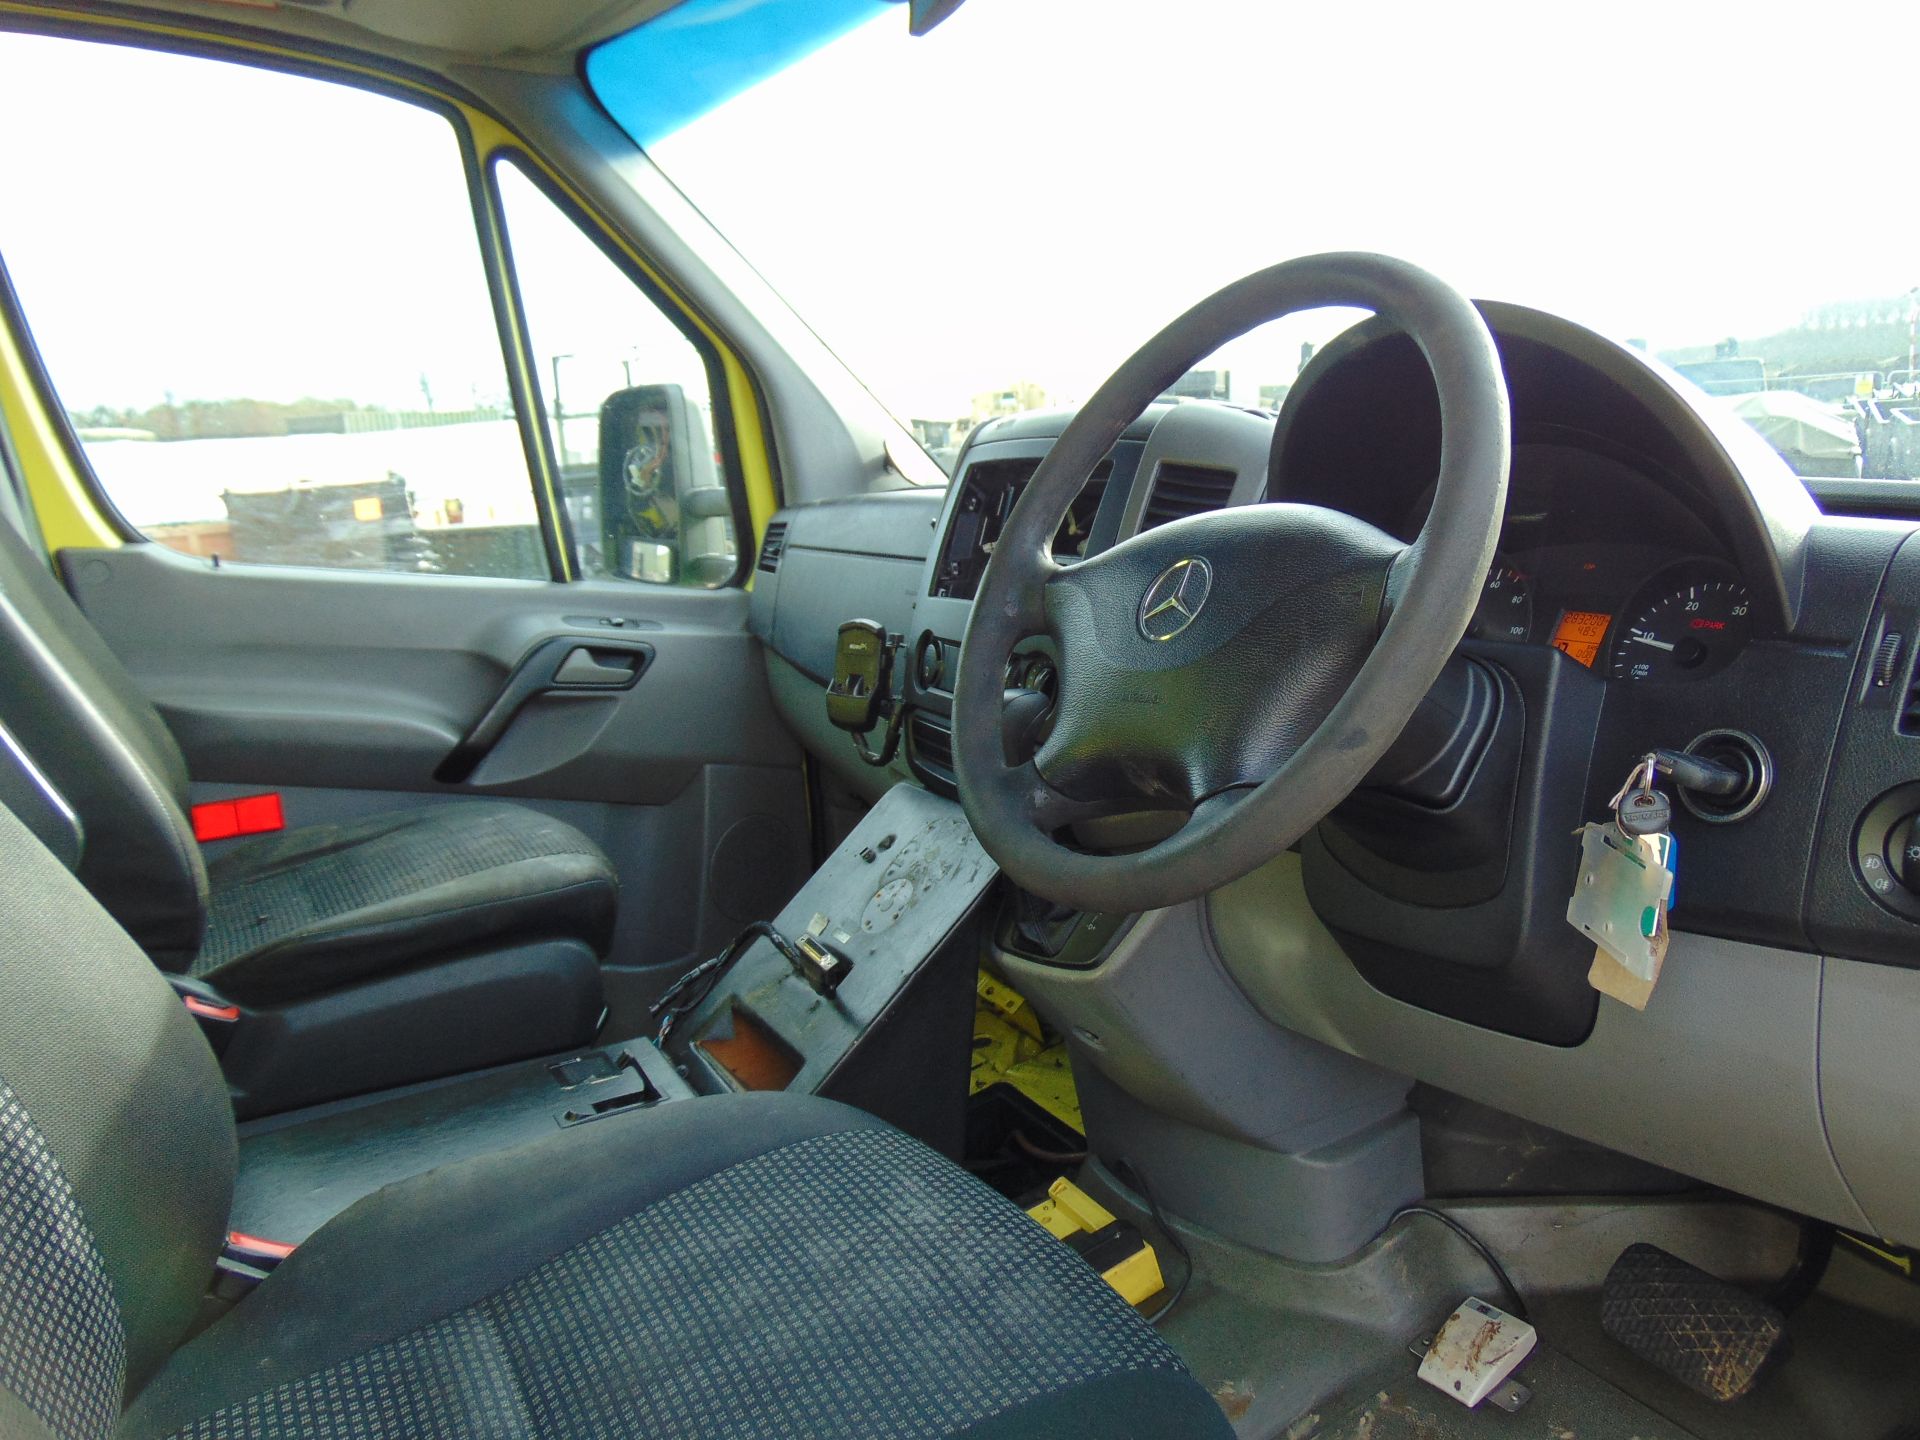 Mercedes Sprinter 515 CDI Turbo Diesel Ambulance - Bild 11 aus 21